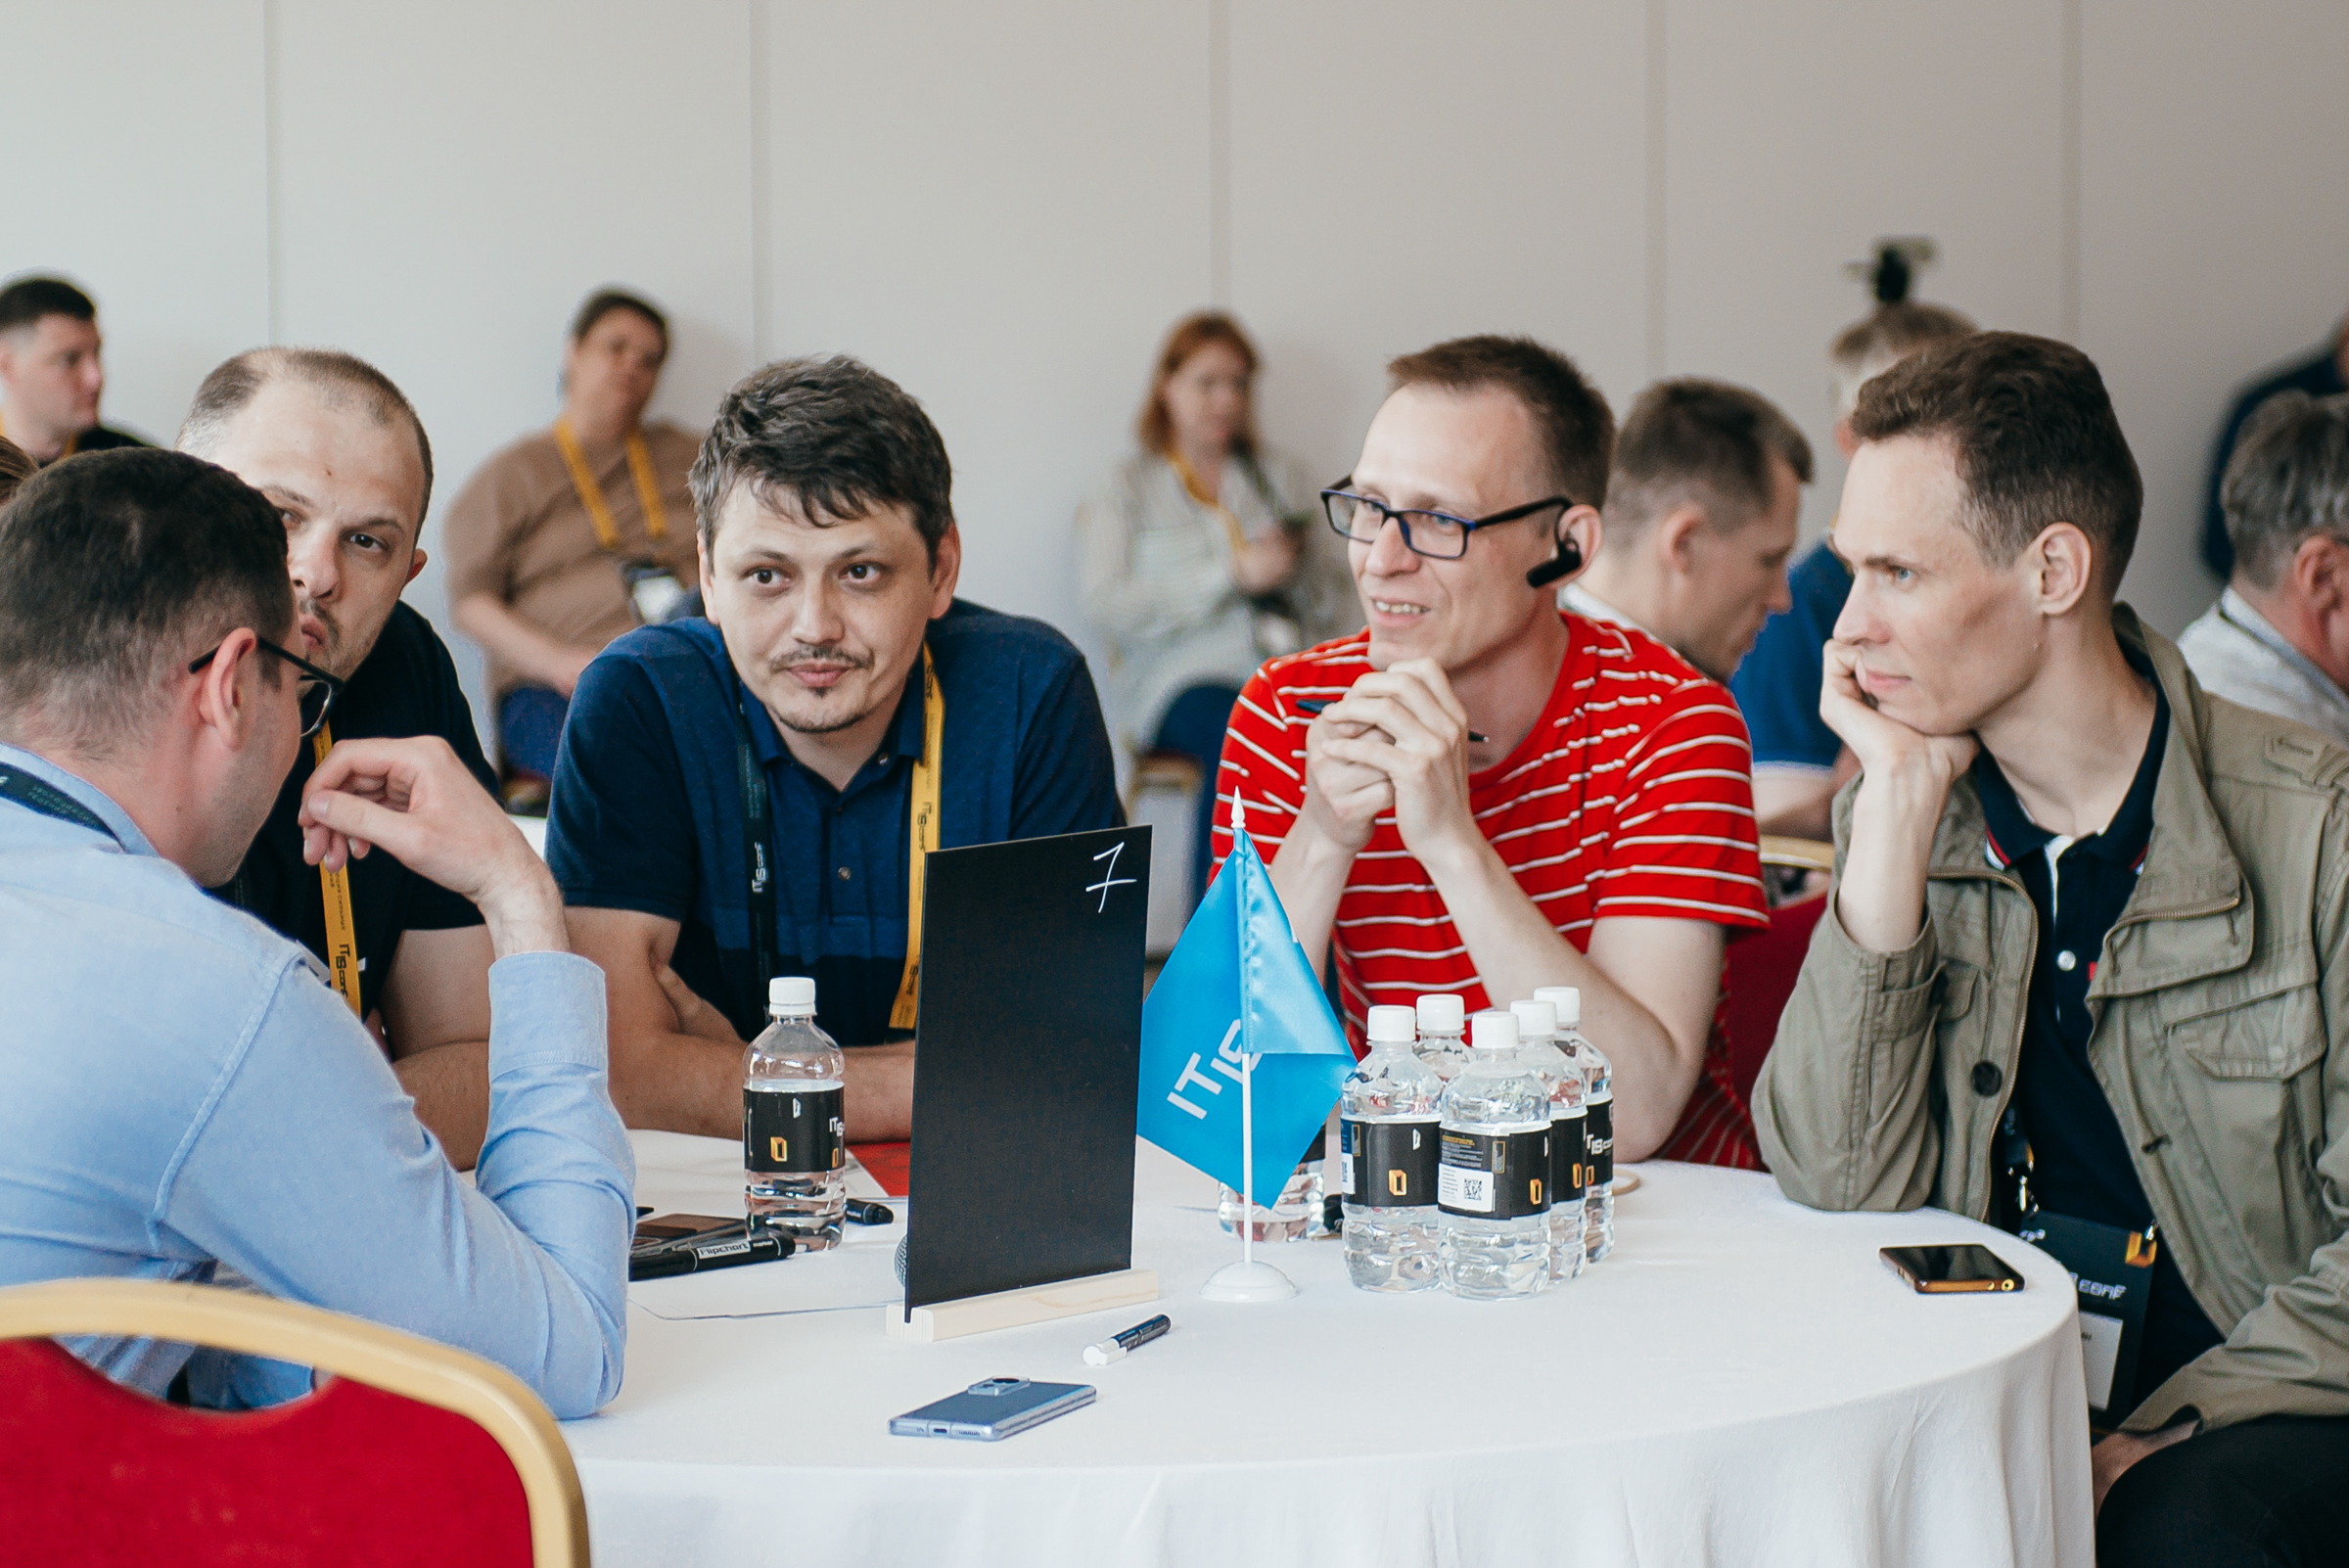 Как в Екатеринбурге проходила конференция IT IS conf 2022. Фоторепортаж